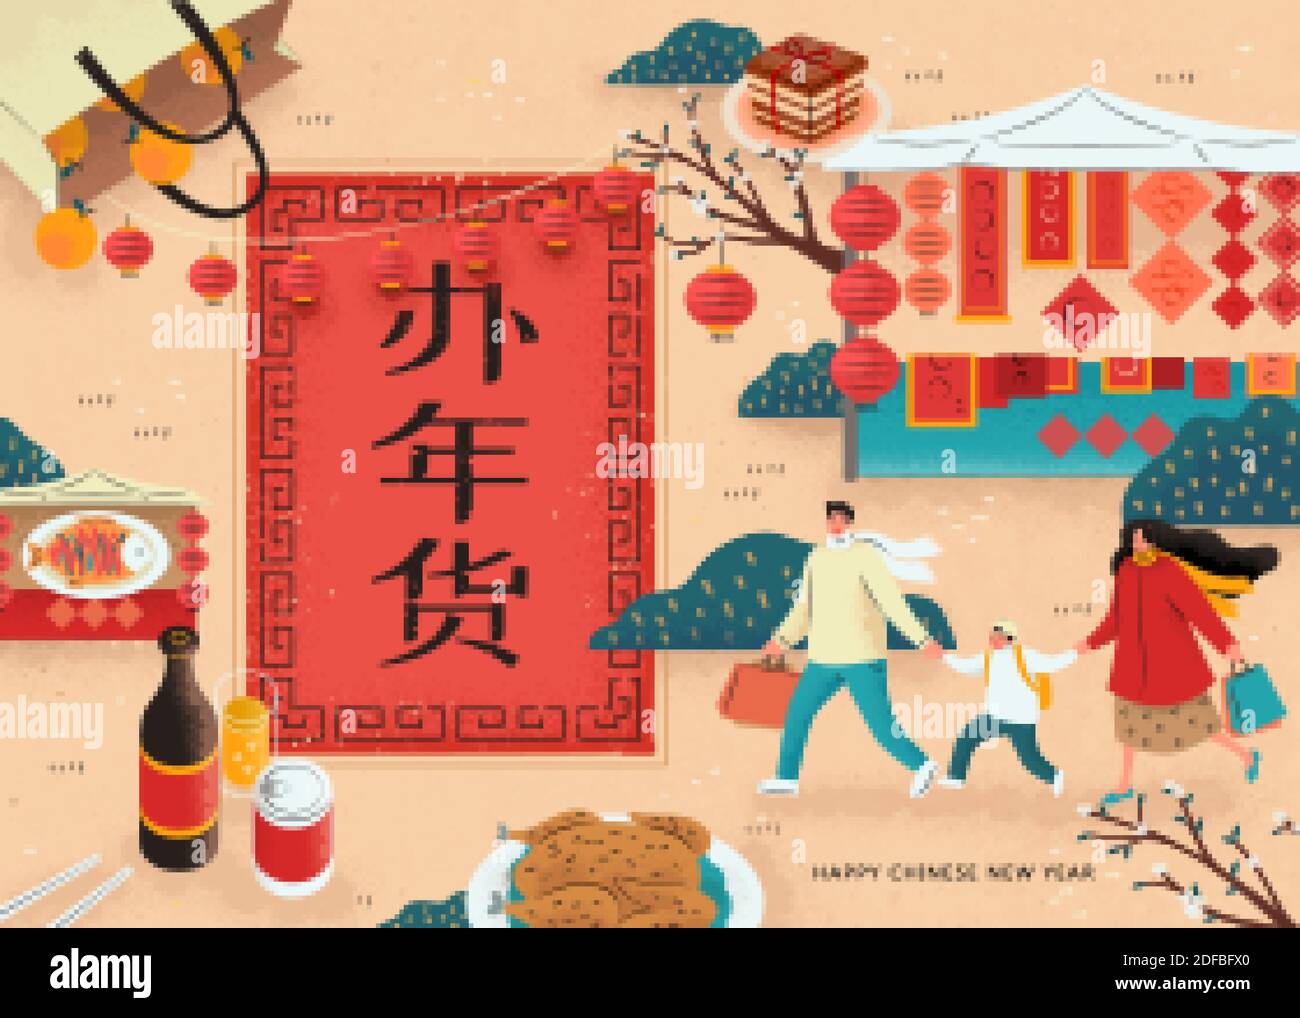 Miniatur asiatische Familie zu Fuß in Outdoor-Markt, Konzept der Kauf von Lebensmitteln für Frühlingsfest, Text: Chinesische Neujahr einkaufen Stock Vektor